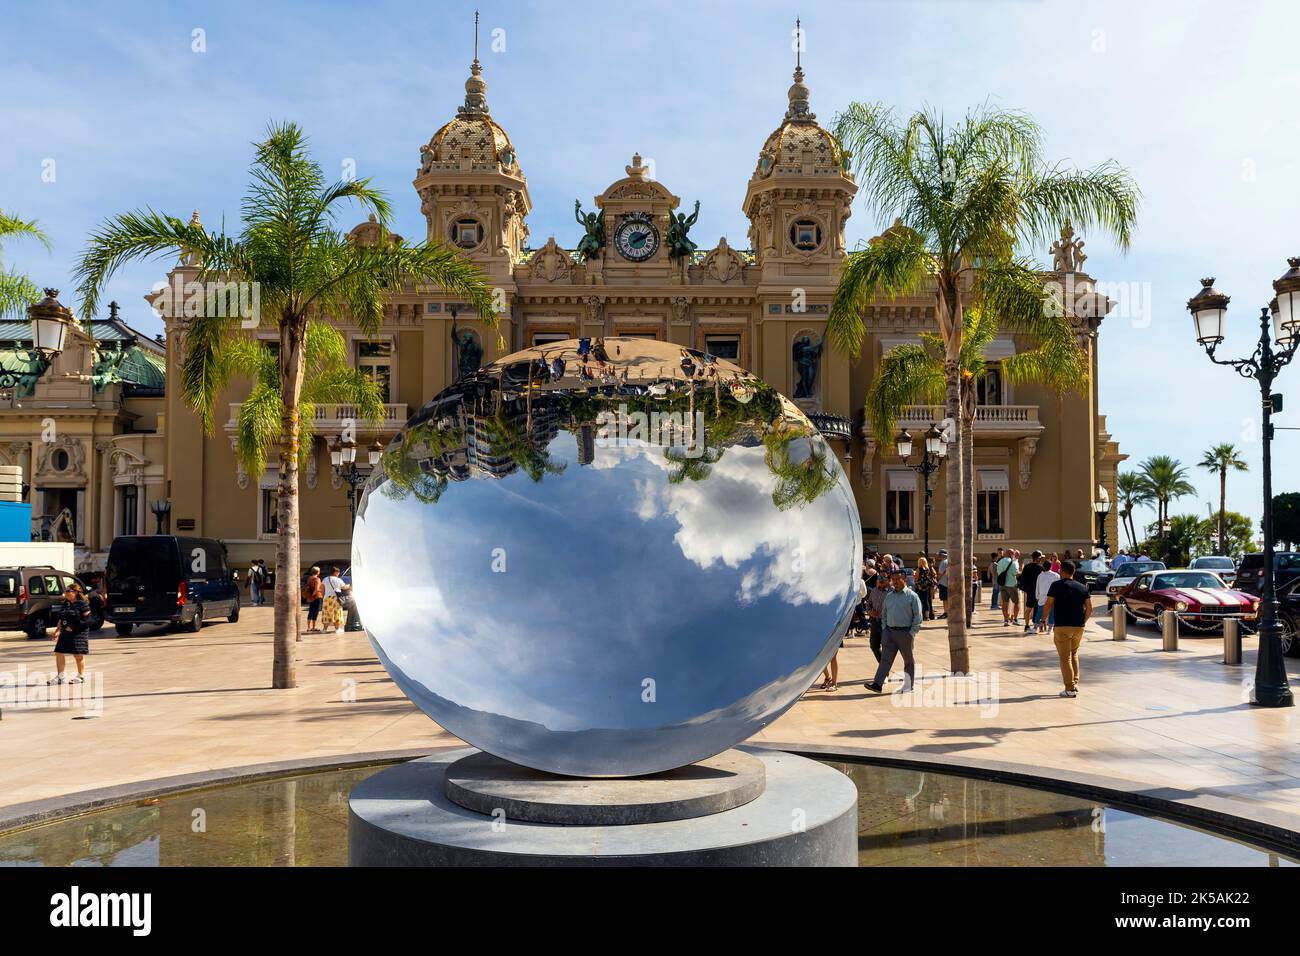 Famous casino building by Golden Square in Monte Carlo, Principality of Monaco. Stock Photo